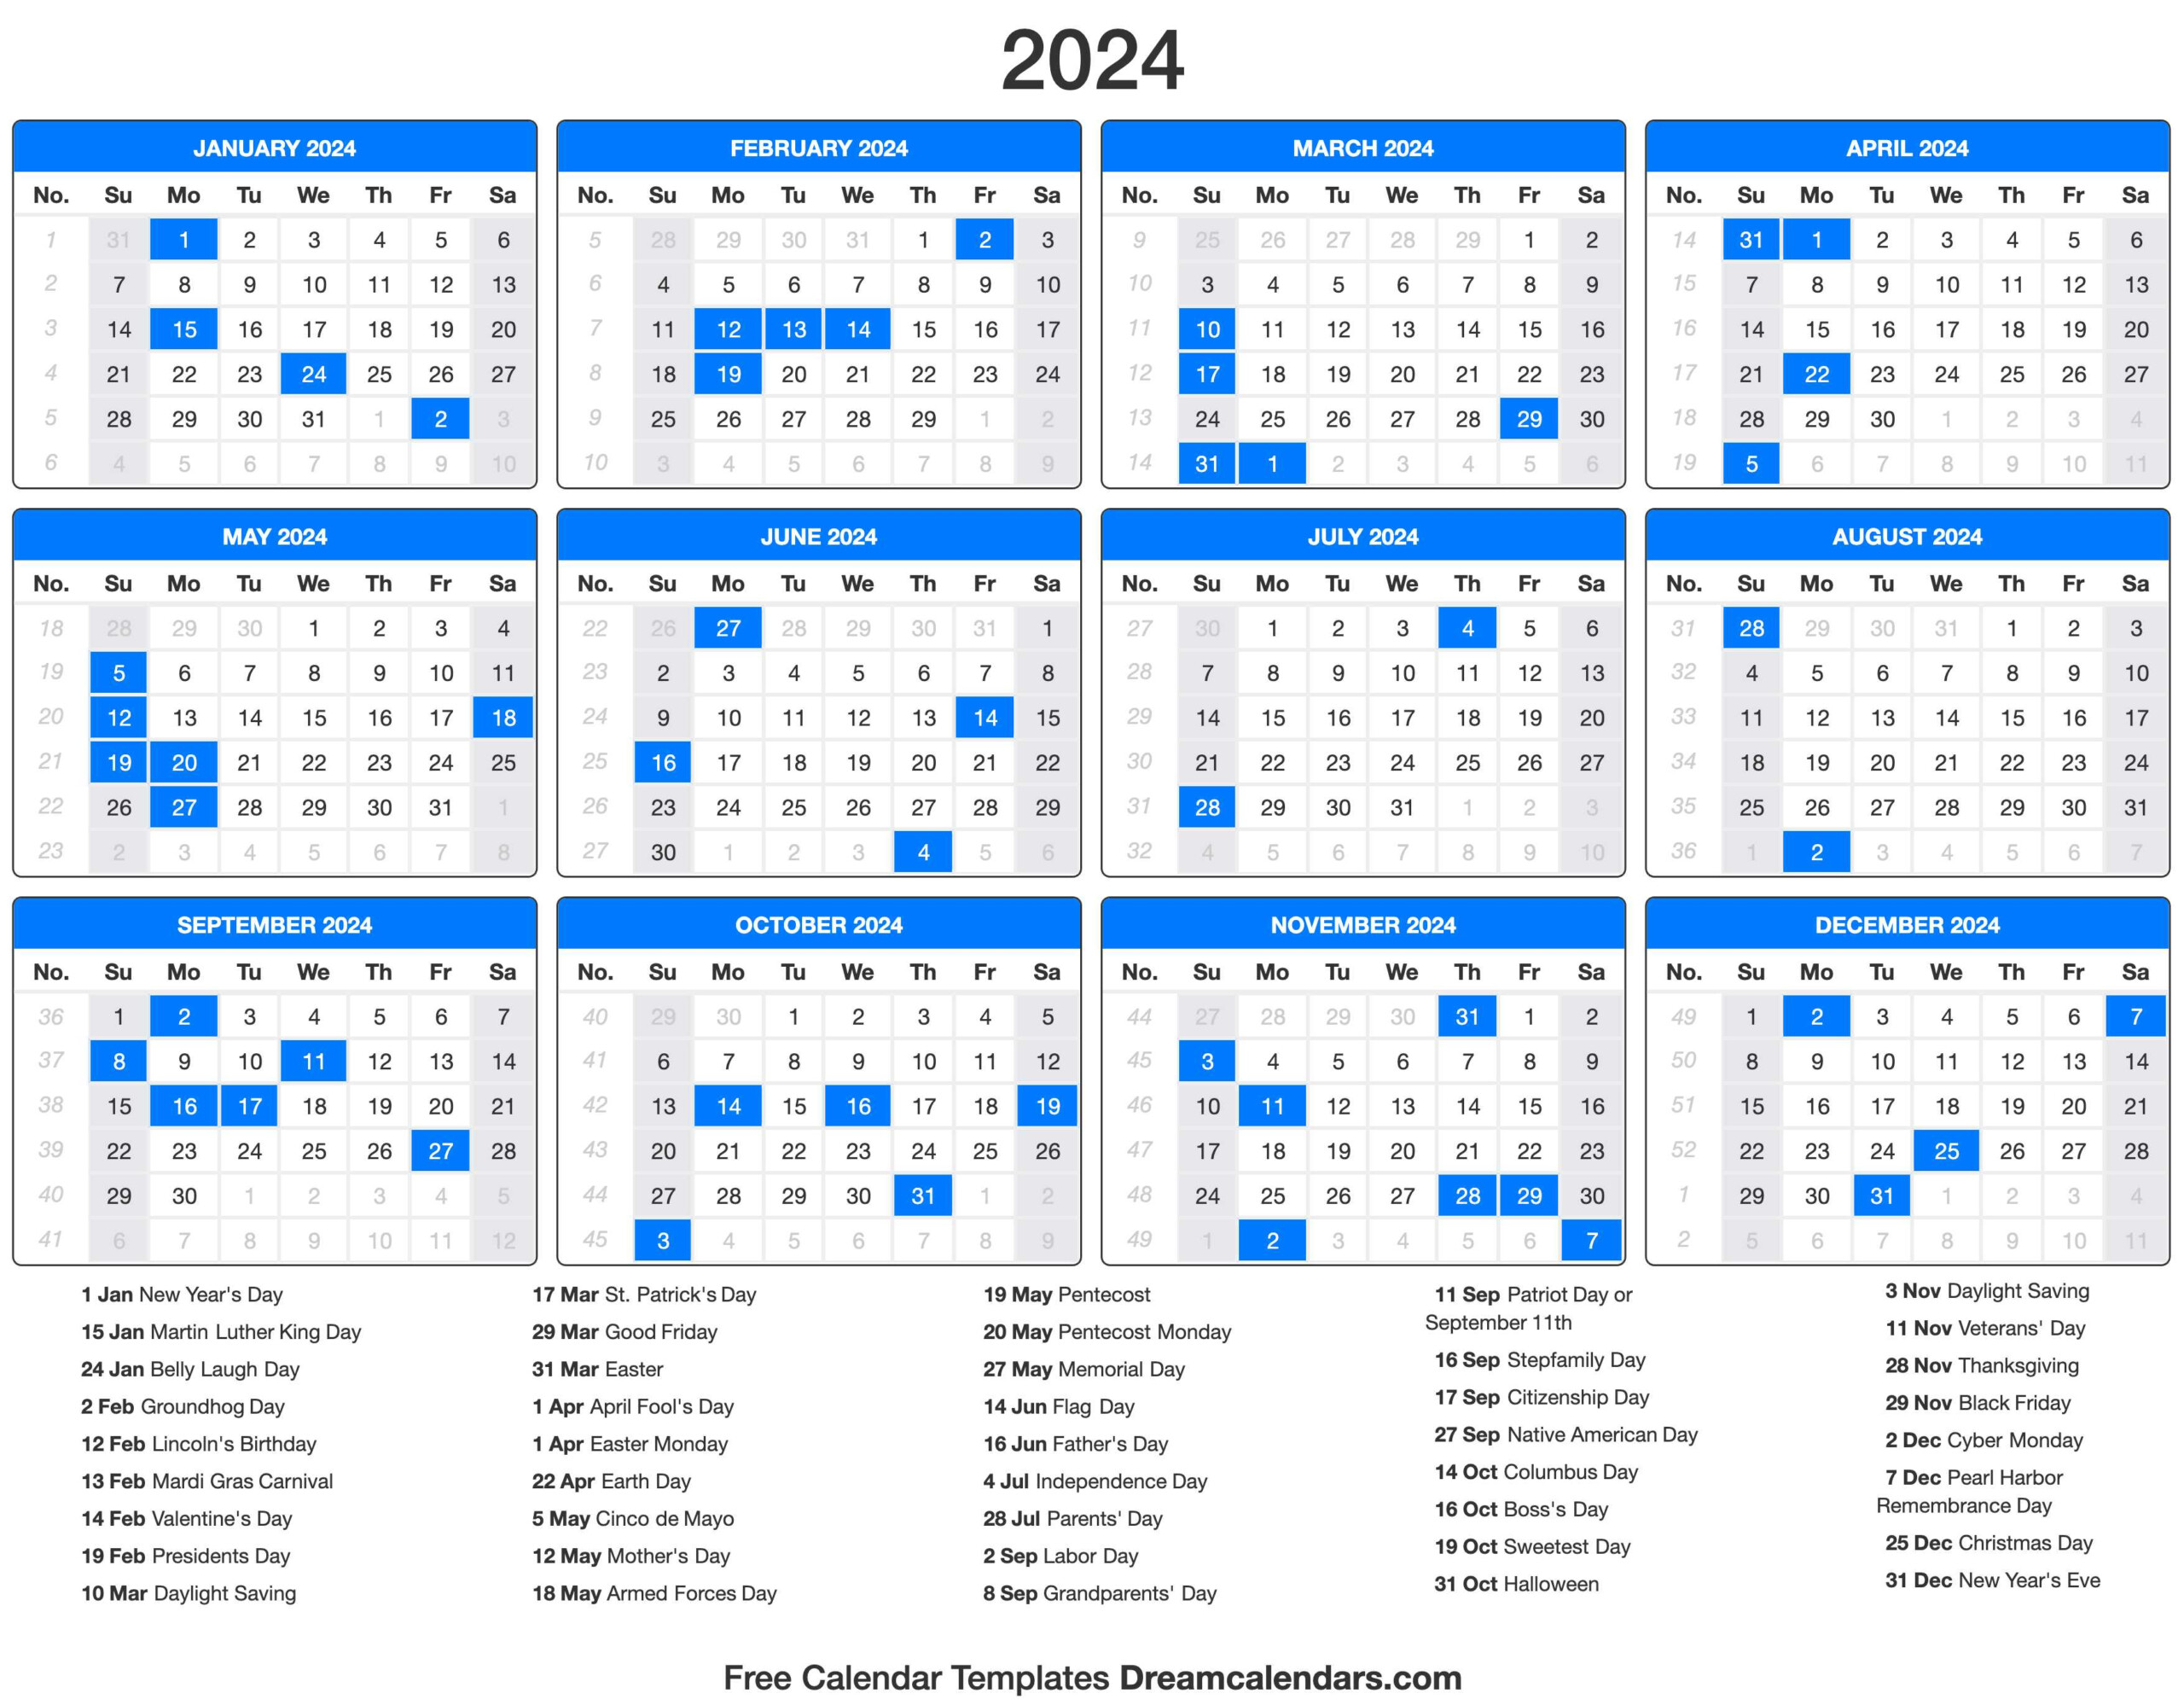 Holiday Calendar For 2024 Dore Rebbecca